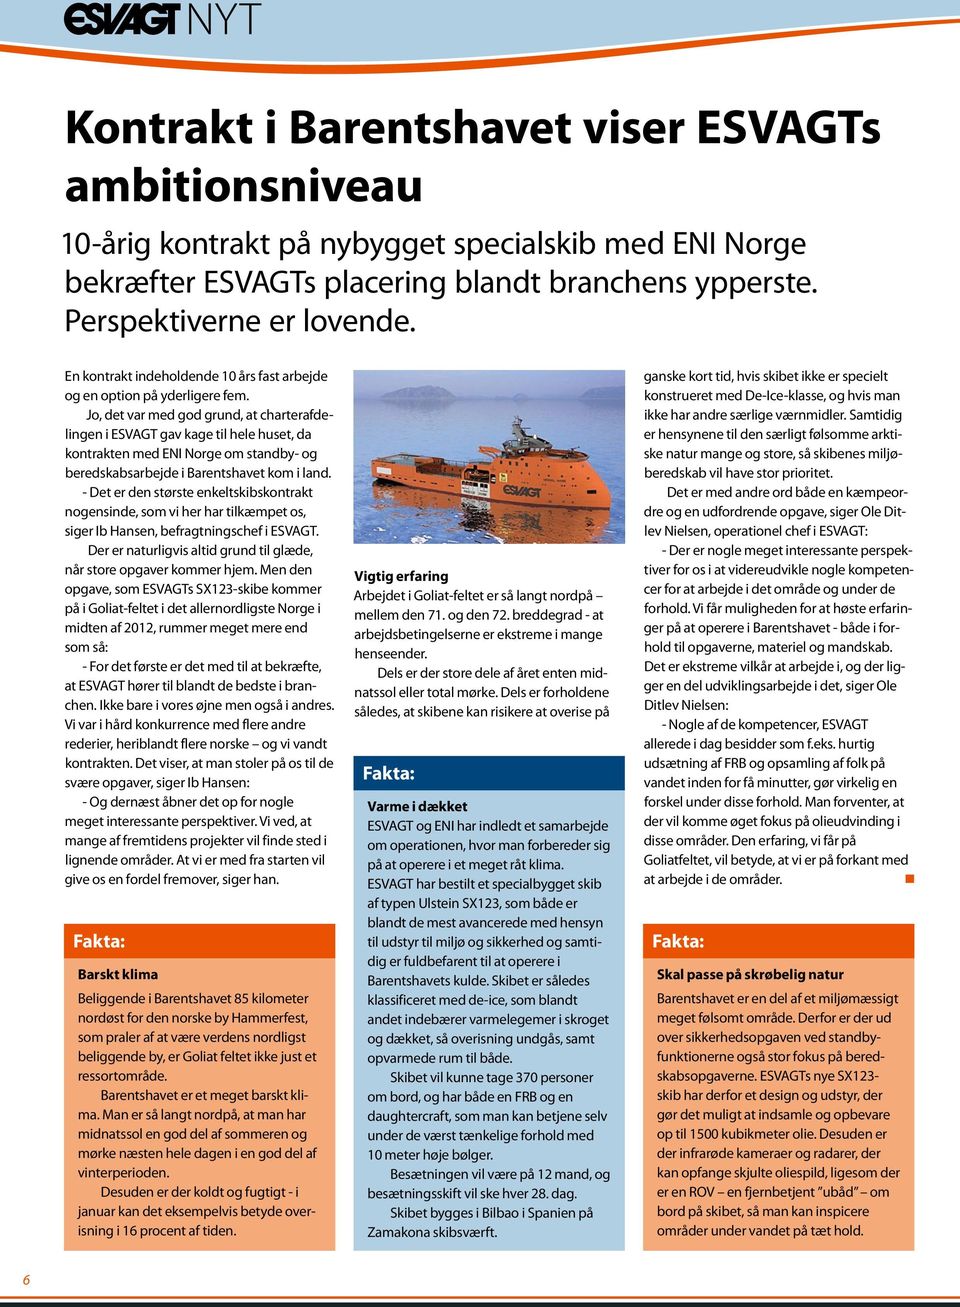 Jo, det var med god grund, at charterafdelingen i ESVAGT gav kage til hele huset, da kontrakten med ENI Norge om standby- og beredskabsarbejde i Barentshavet kom i land.